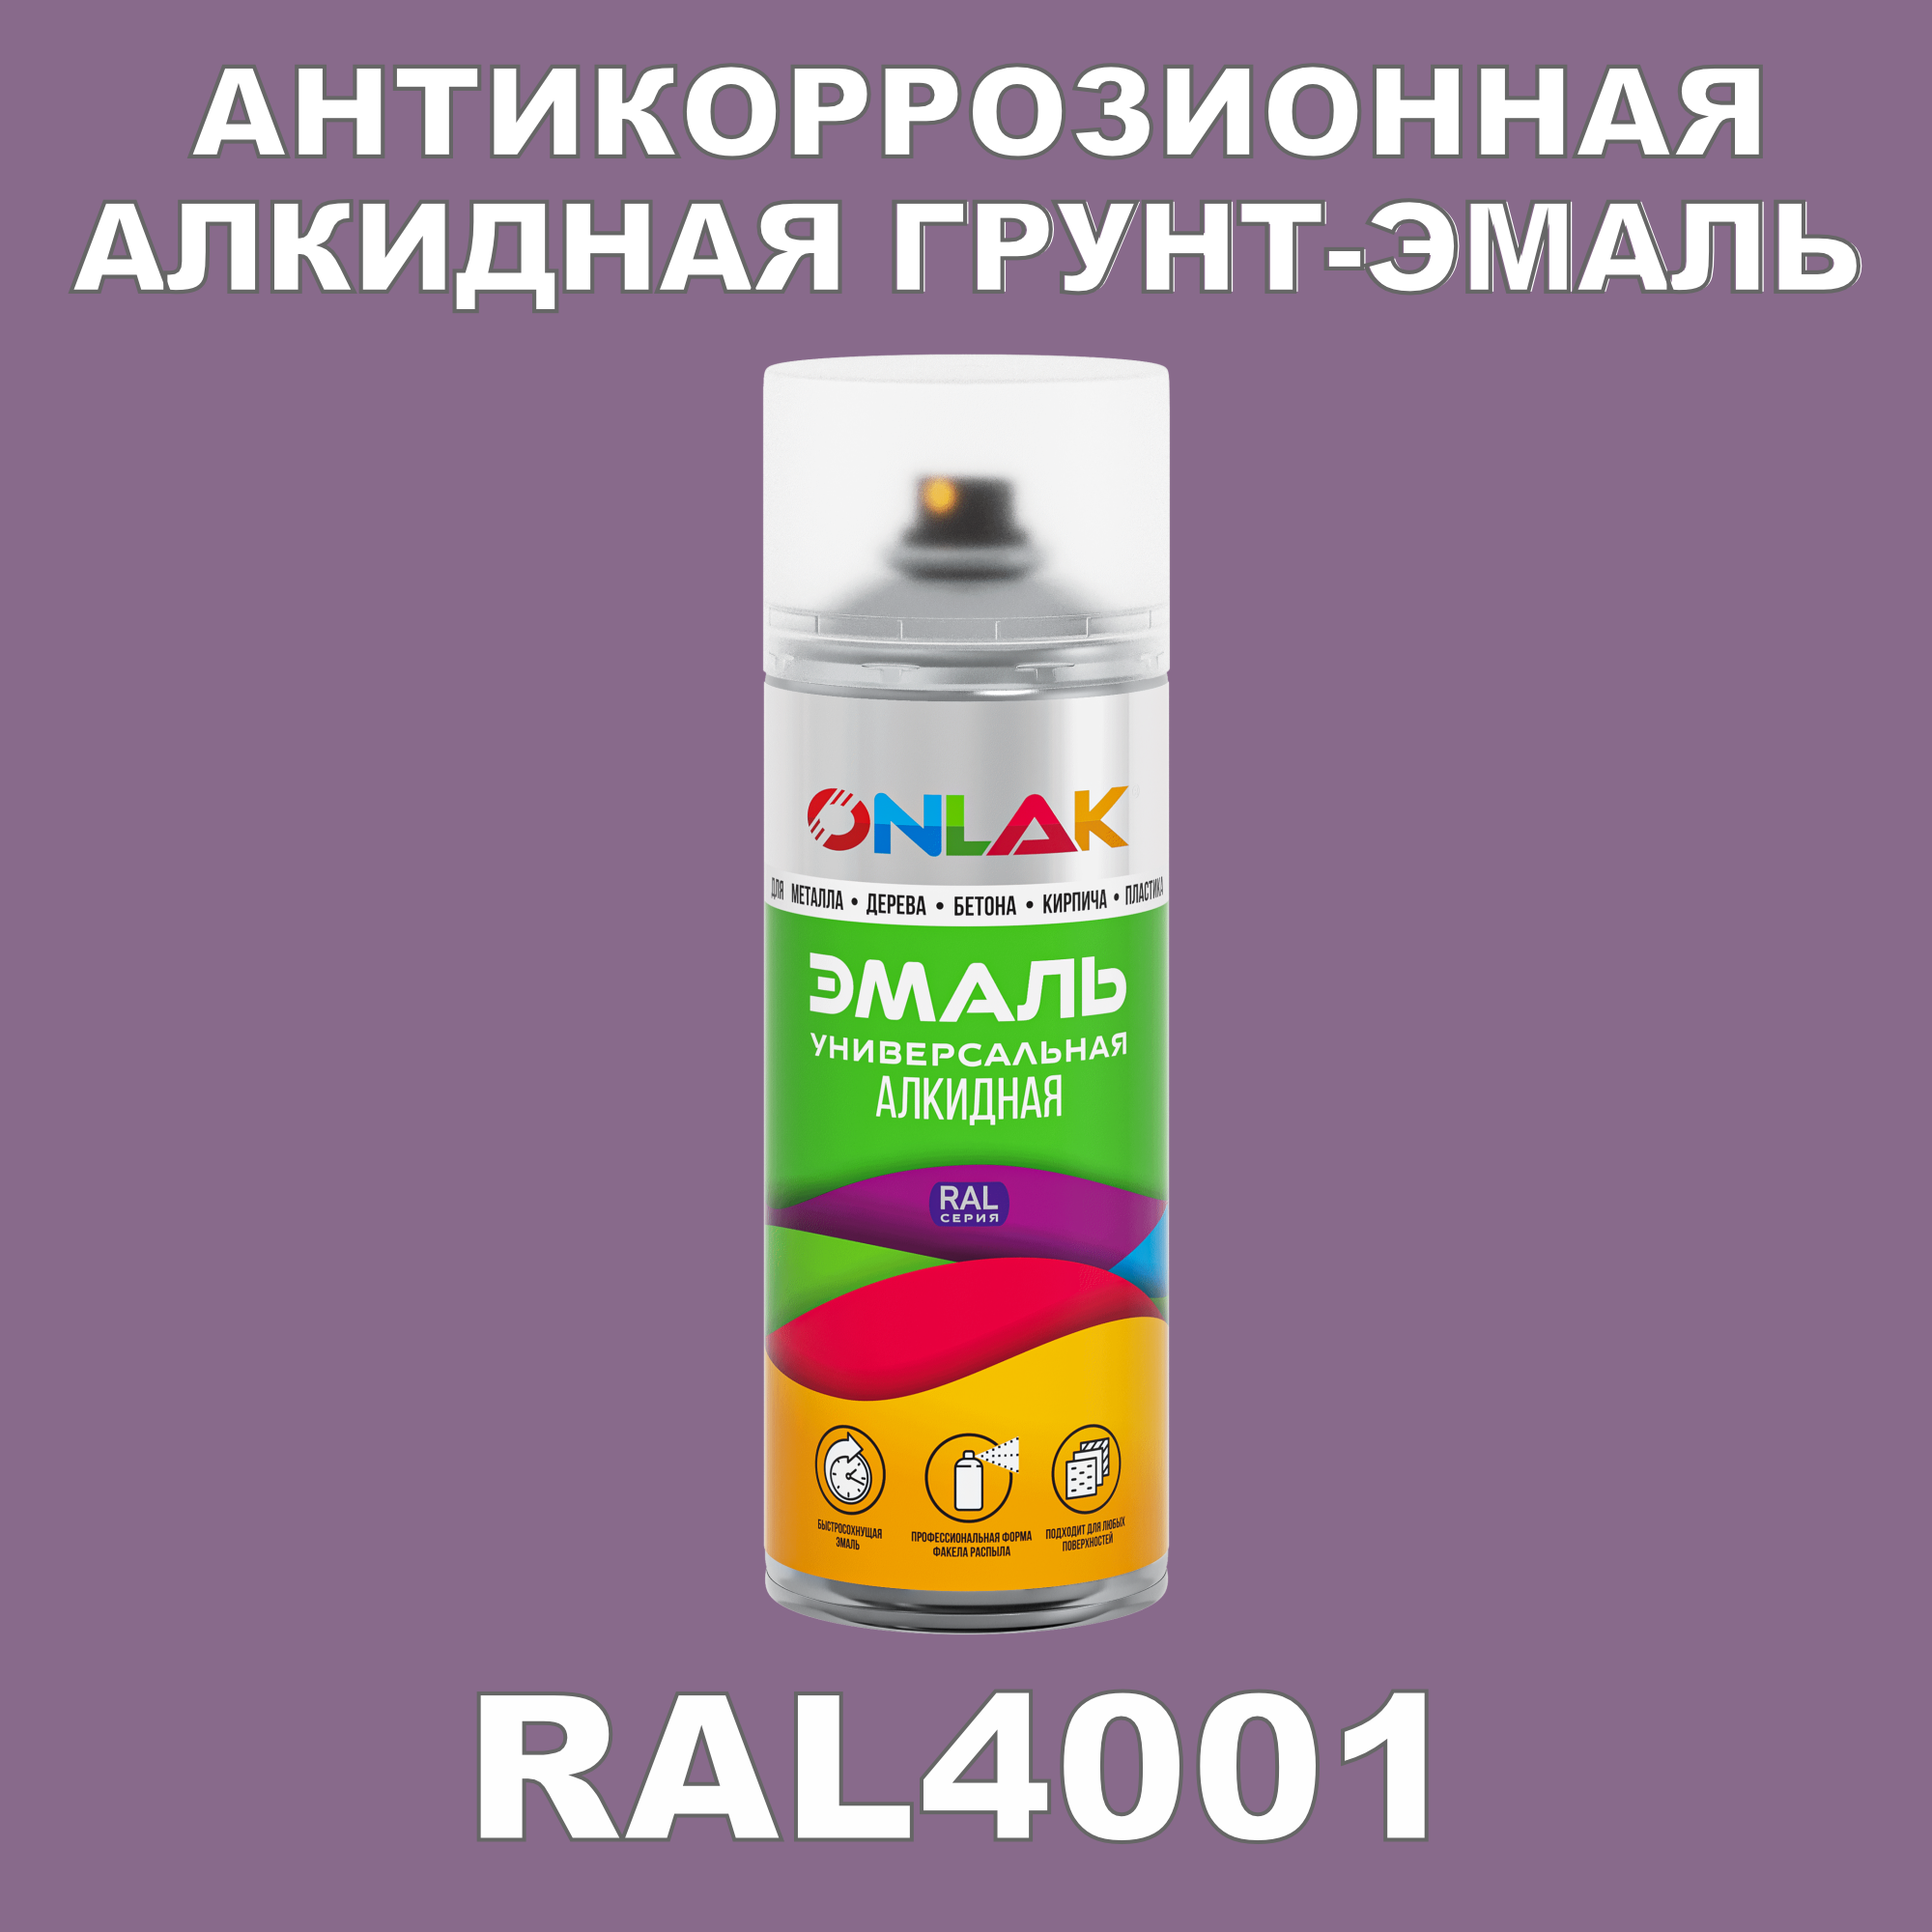 Антикоррозионная грунт-эмаль ONLAK RAL4001 матовая для металла и защиты от ржавчины artuniq color violet ной грунт для аквариума фиолетовый 1 кг